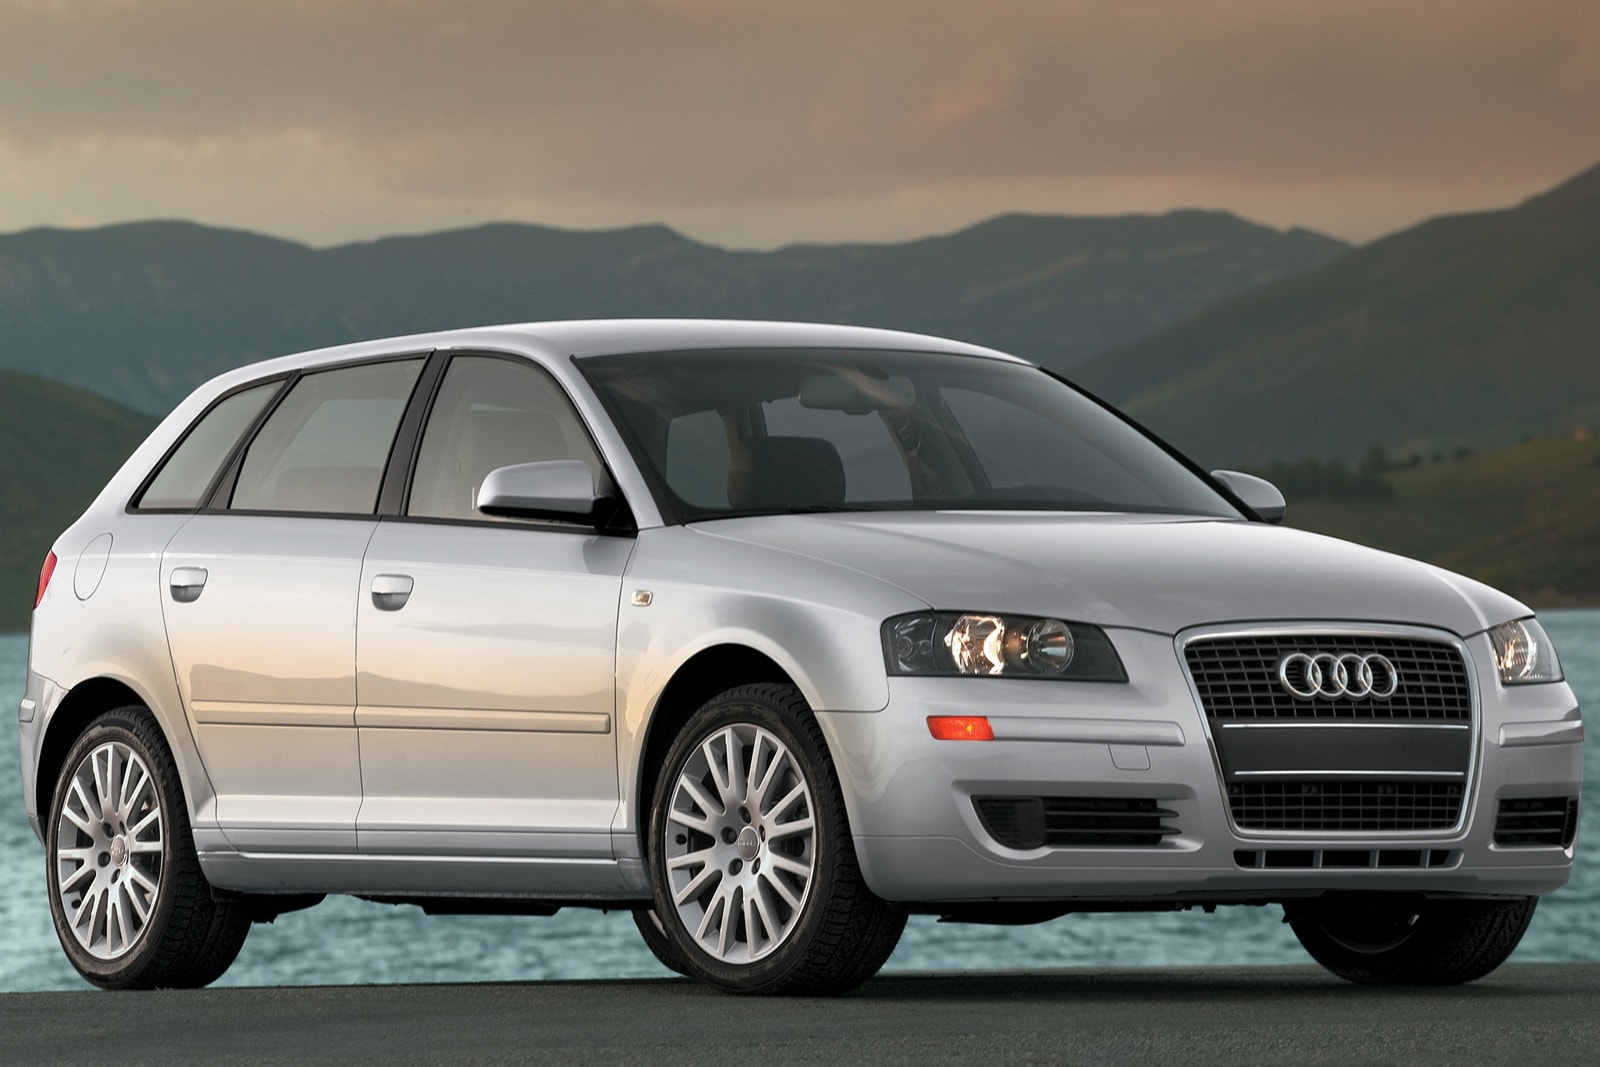 2008 Audi A3 Review & Ratings | Edmunds